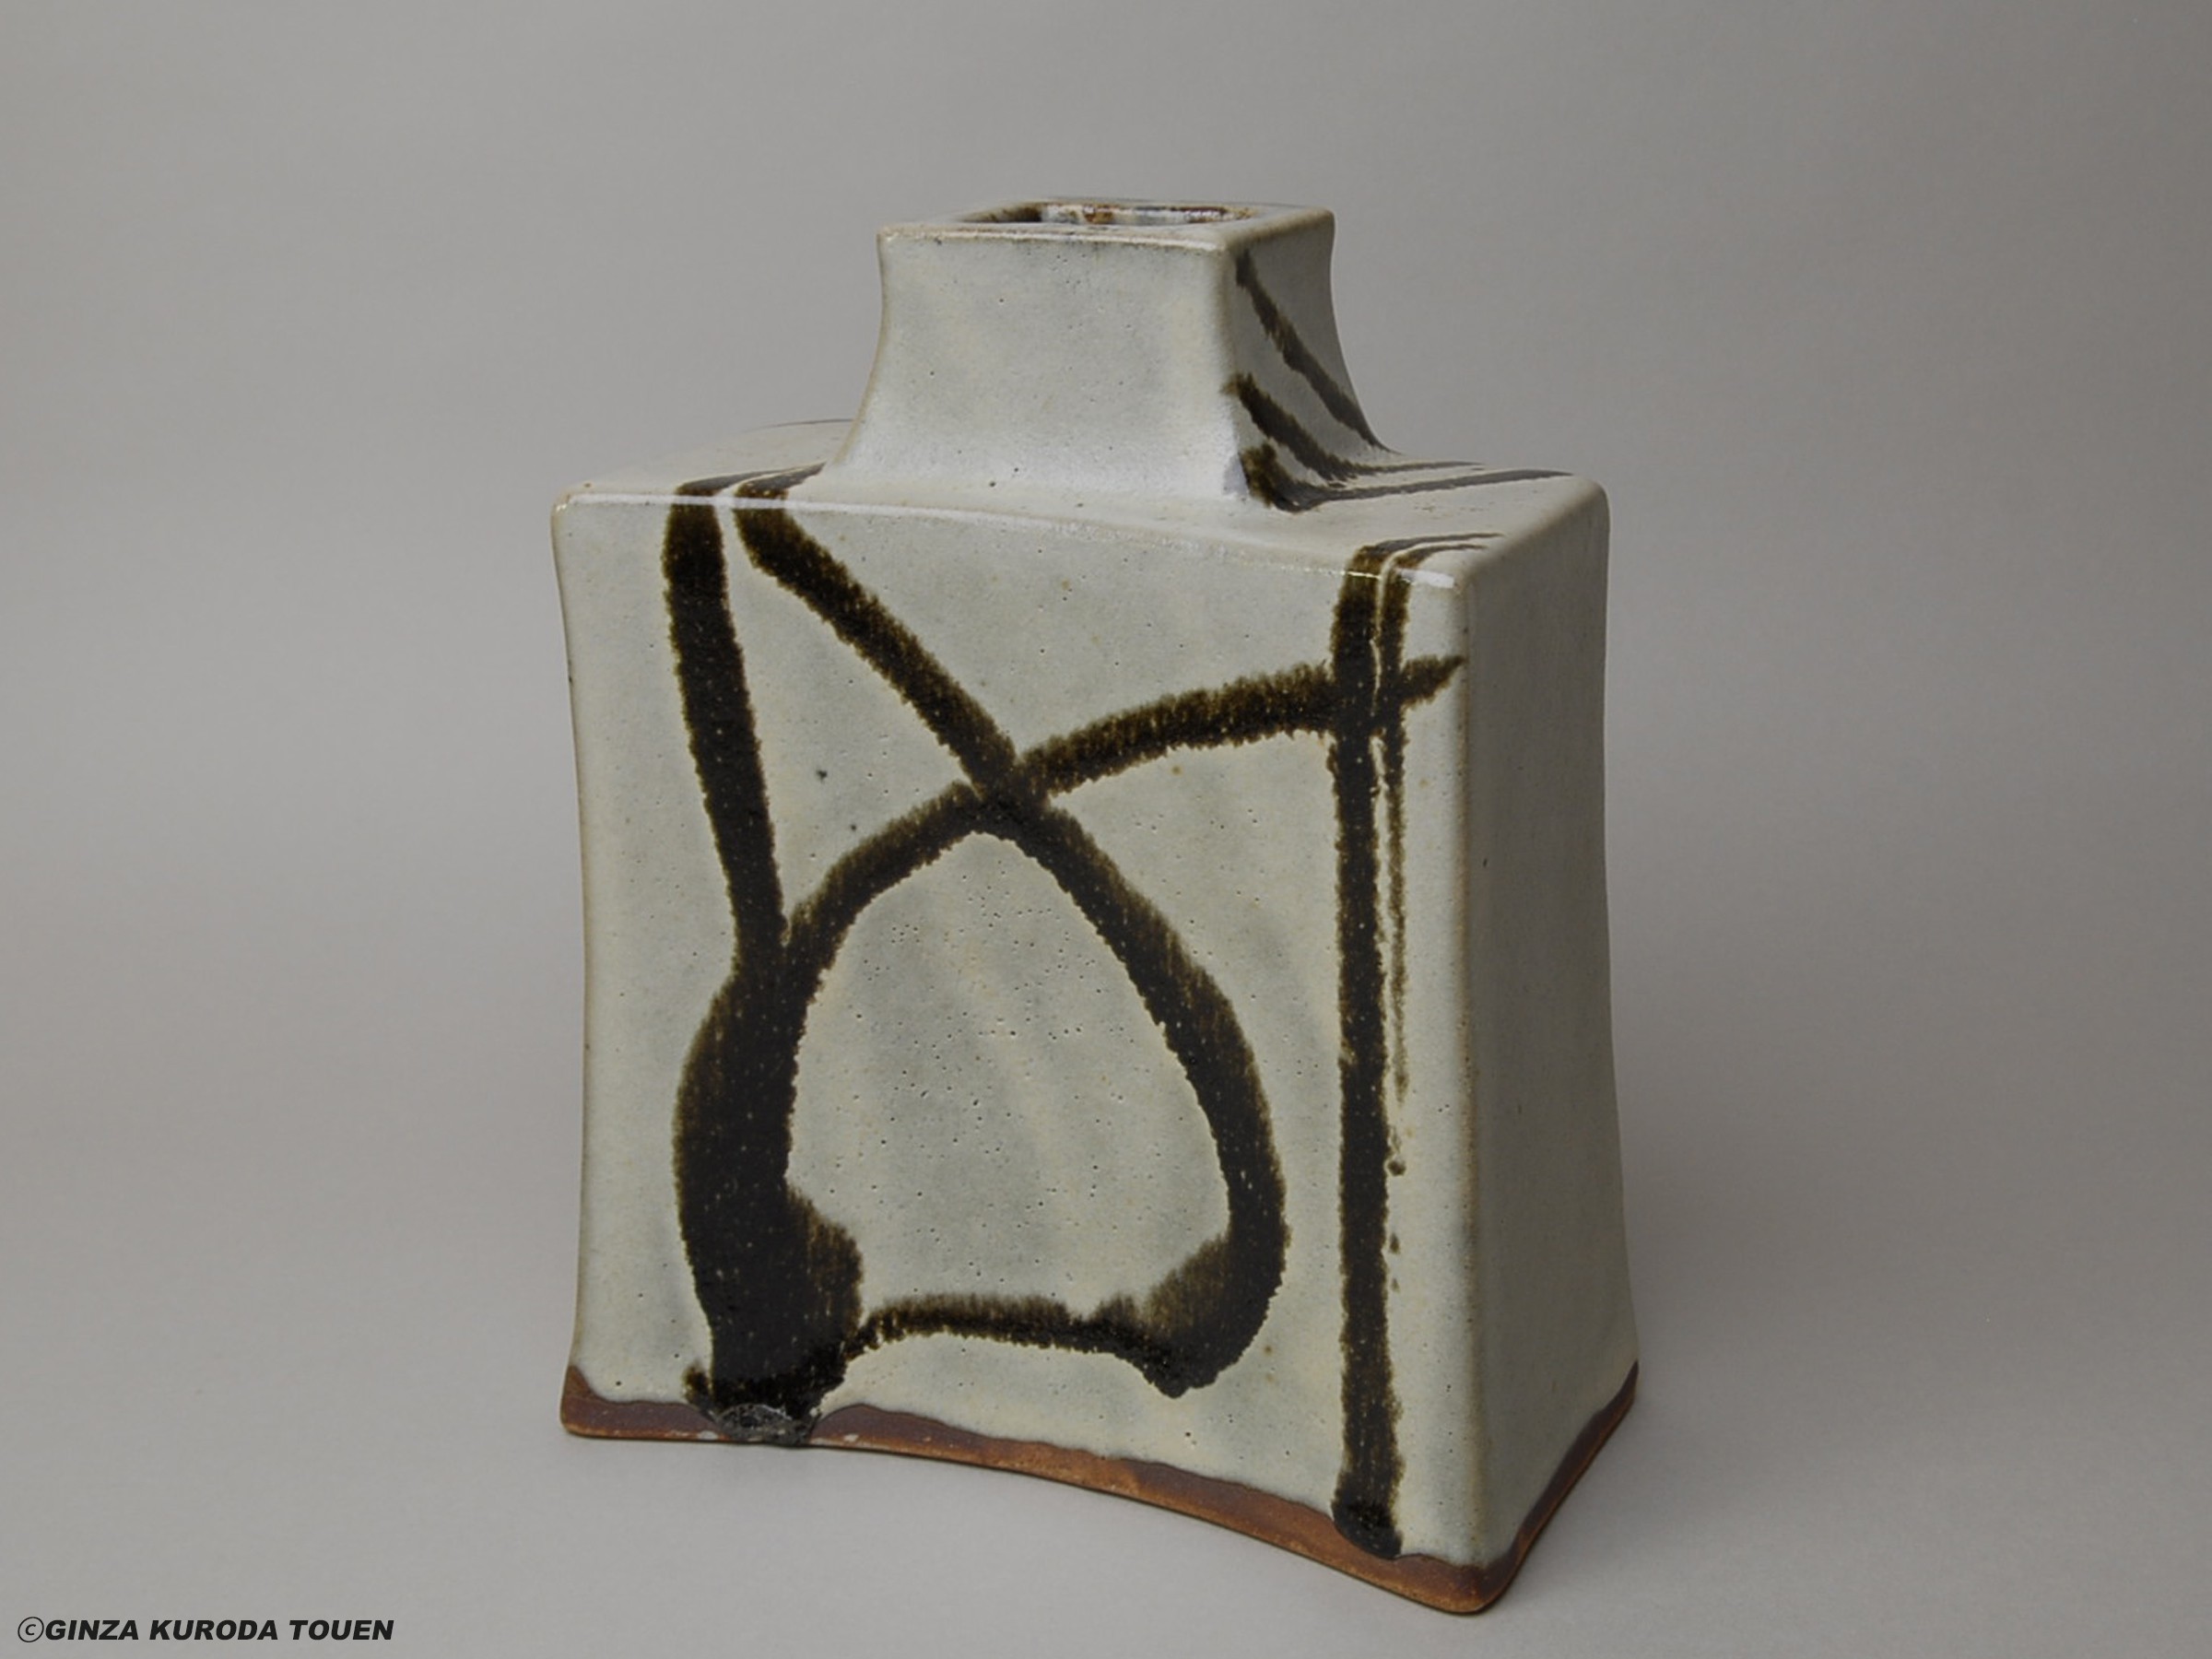 Shoji Hamada: Flat vase, Black paint on white glaze